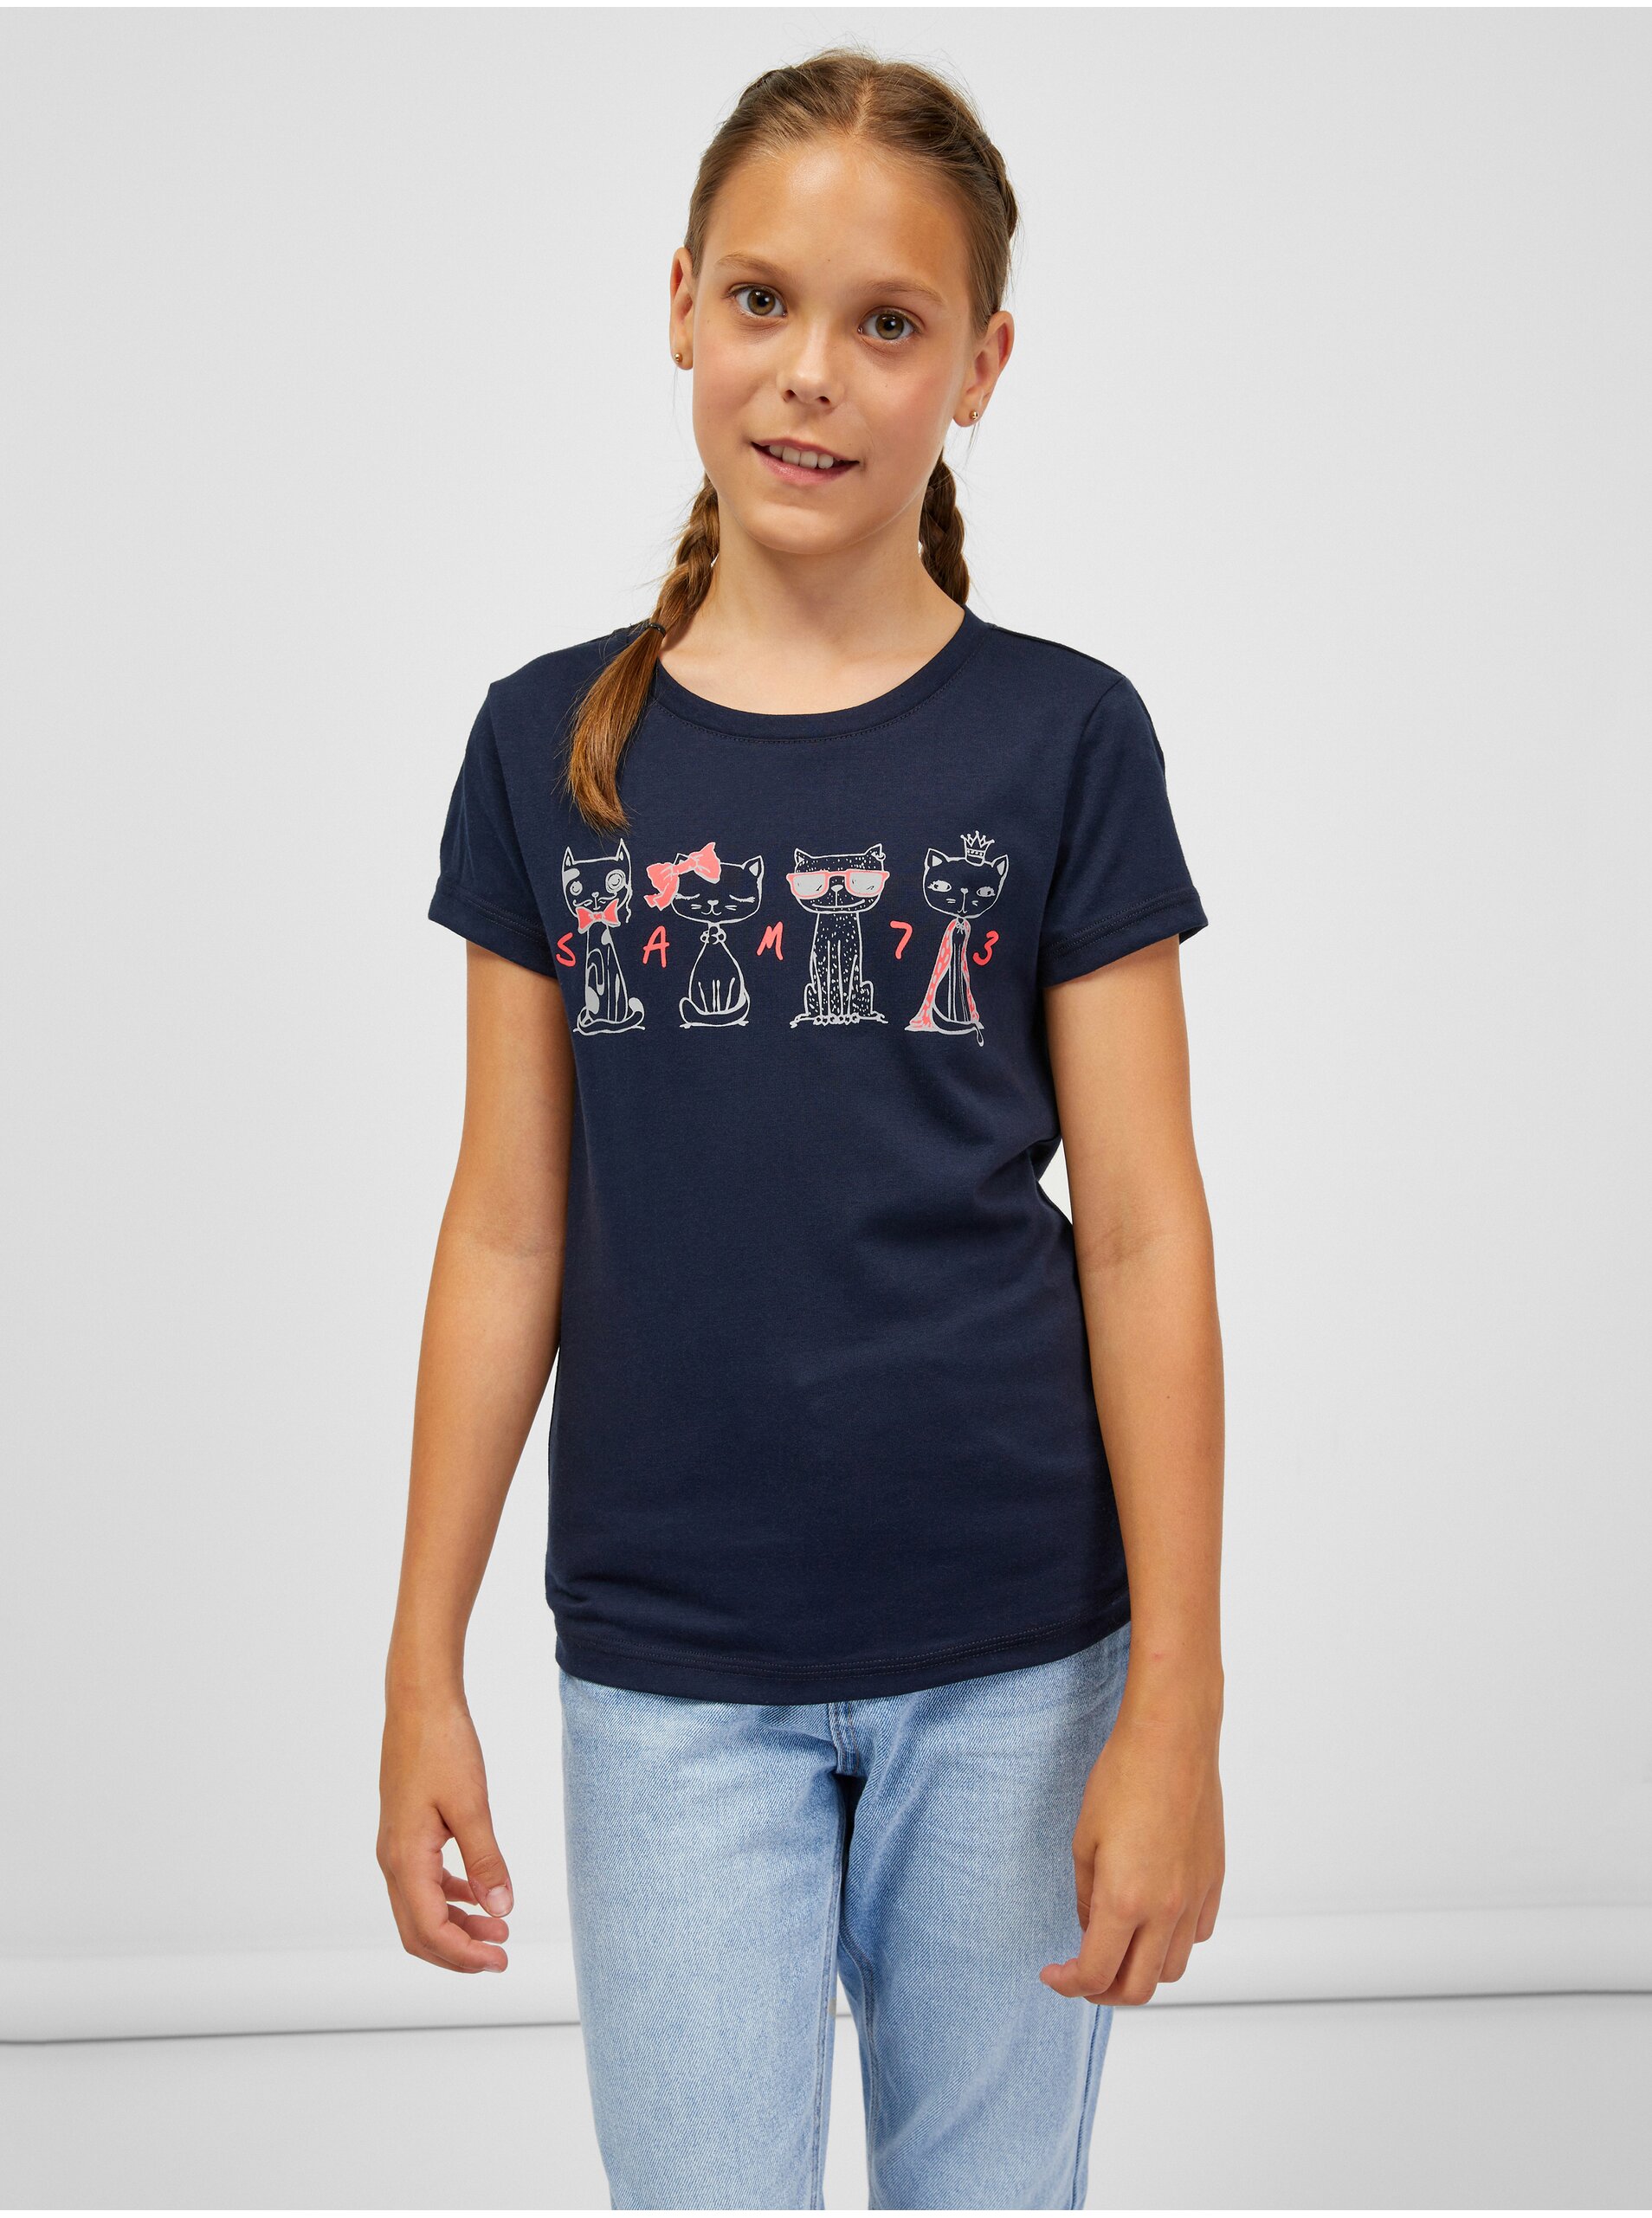 Lacno Tmavomodré dievčenské tričko SAM 73 Axill